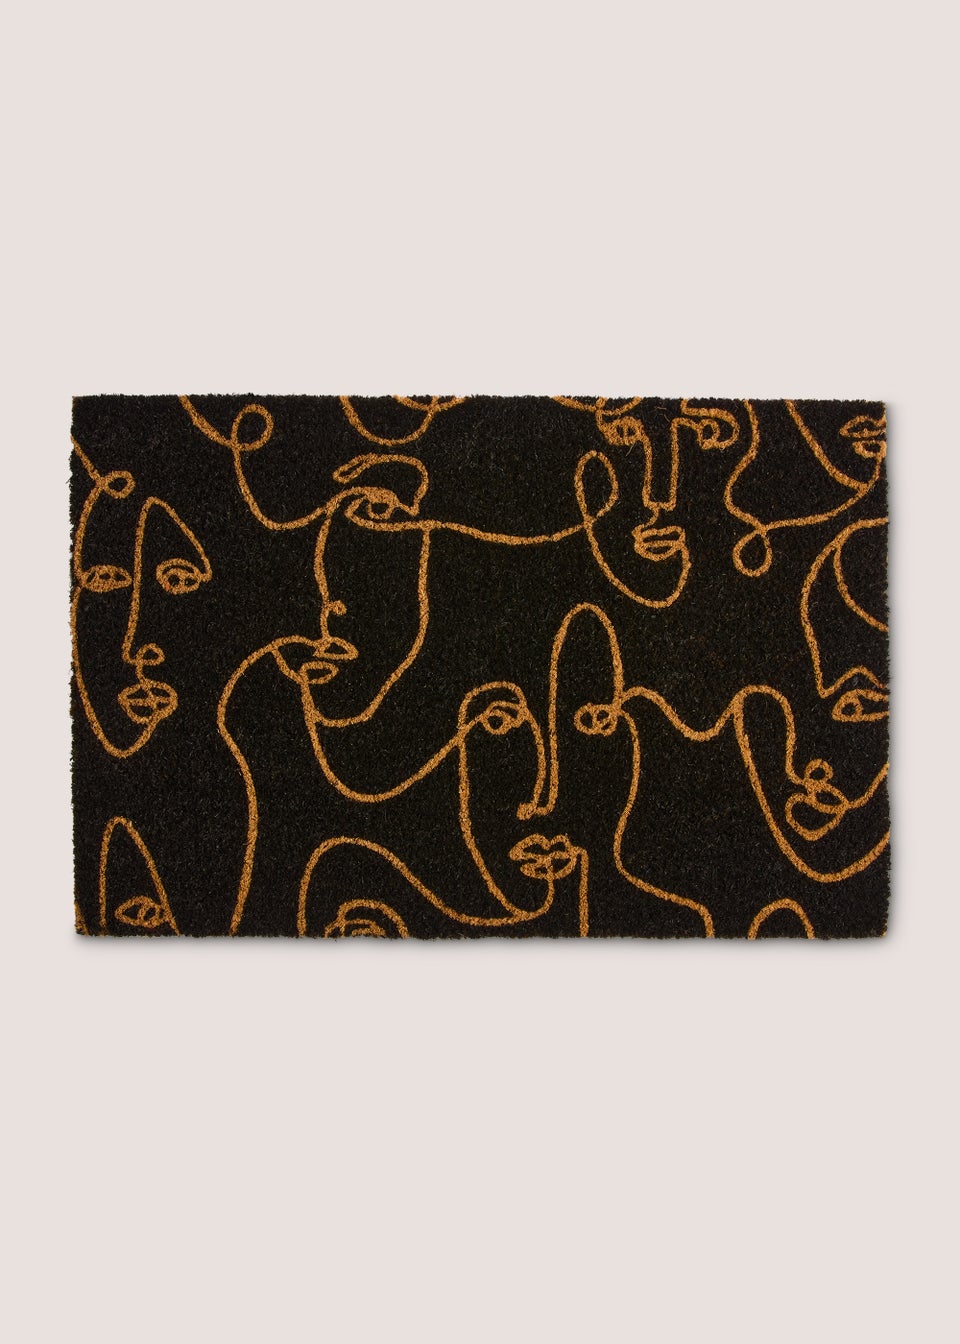 Monochrome Faces Doormat (60cm x 40cm)